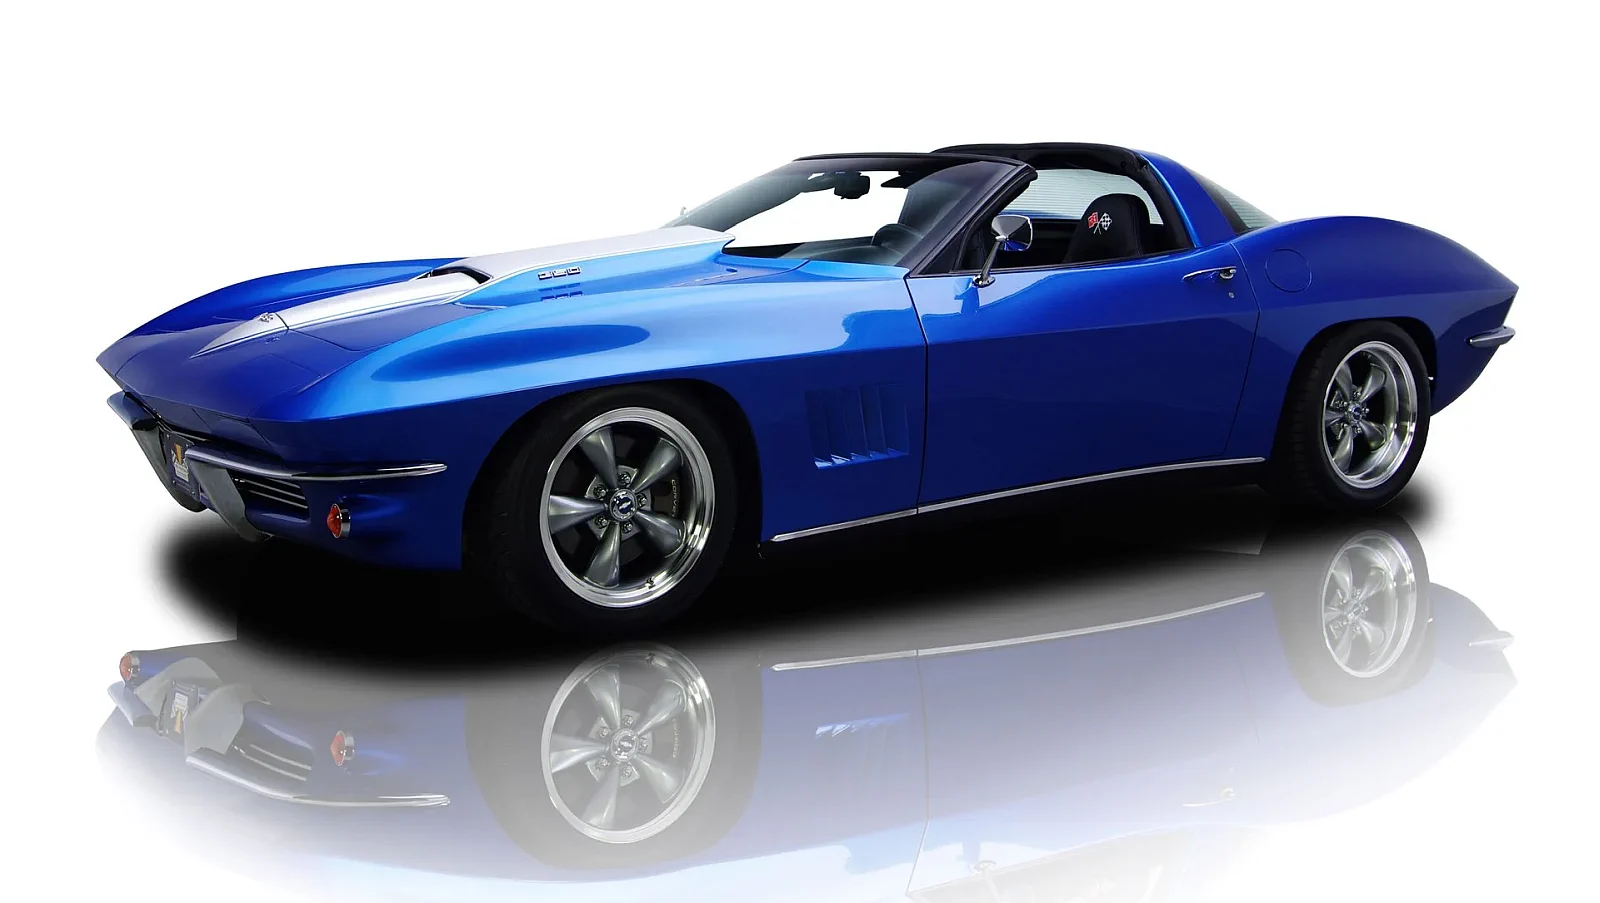 Corvette Generations/C5/C5 2003 Blue Corvette platform, delivering C2 looks.webp